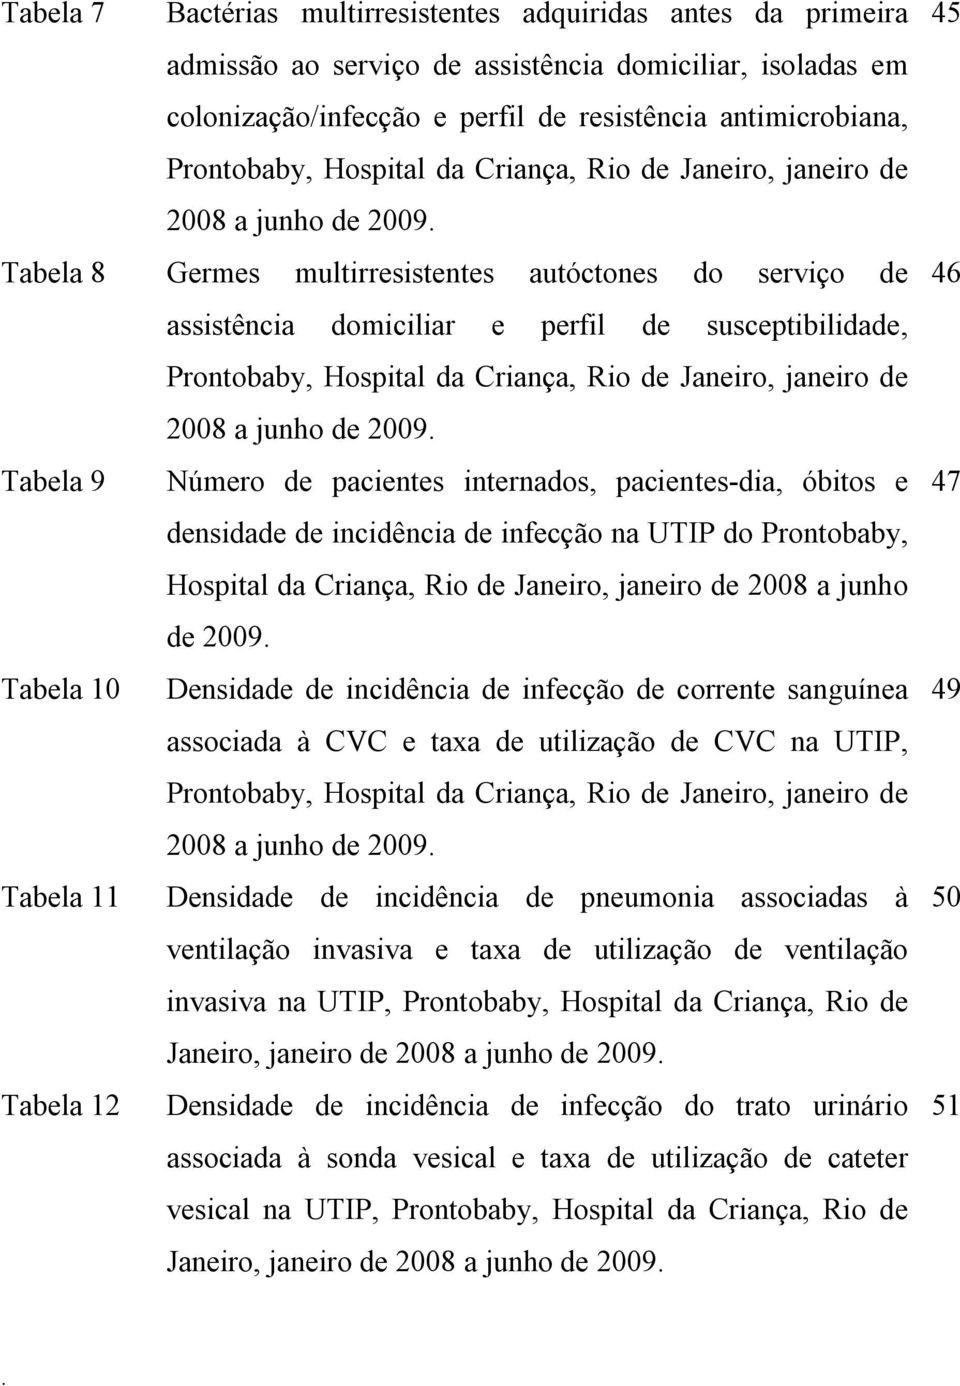 Hospital da Criança, Rio de Janeiro, janeiro de 2008 a junho de 2009 Tabela 9 Número de pacientes internados, pacientes-dia, óbitos e densidade de incidência de infecção na UTIP do Prontobaby,